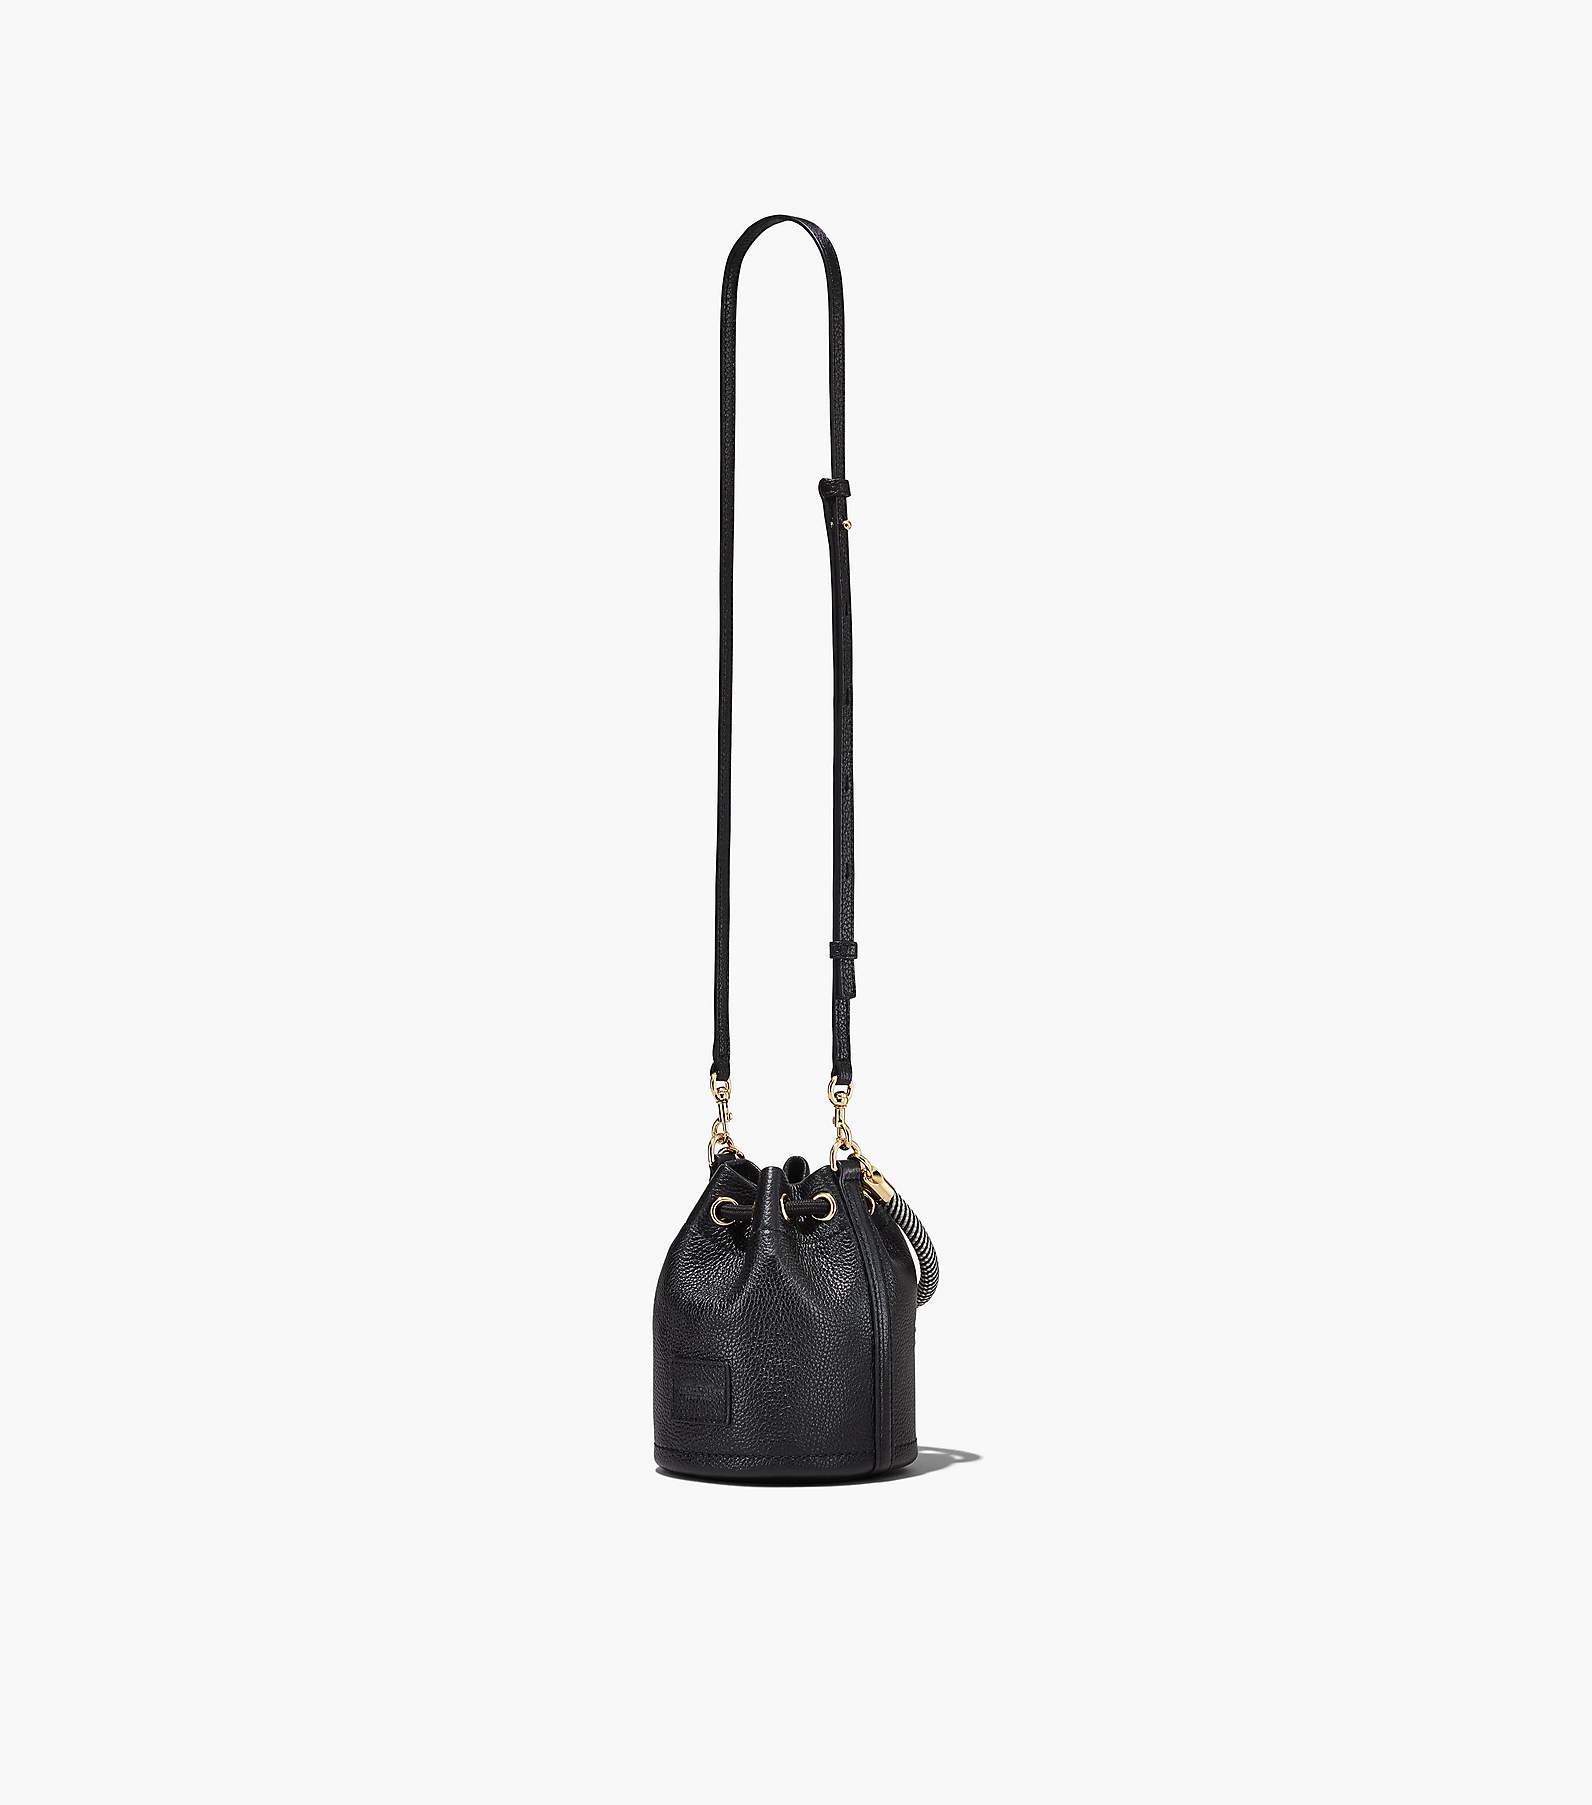 Black Shoulder Leather Handbags Adjustable Strap Unique Bucket